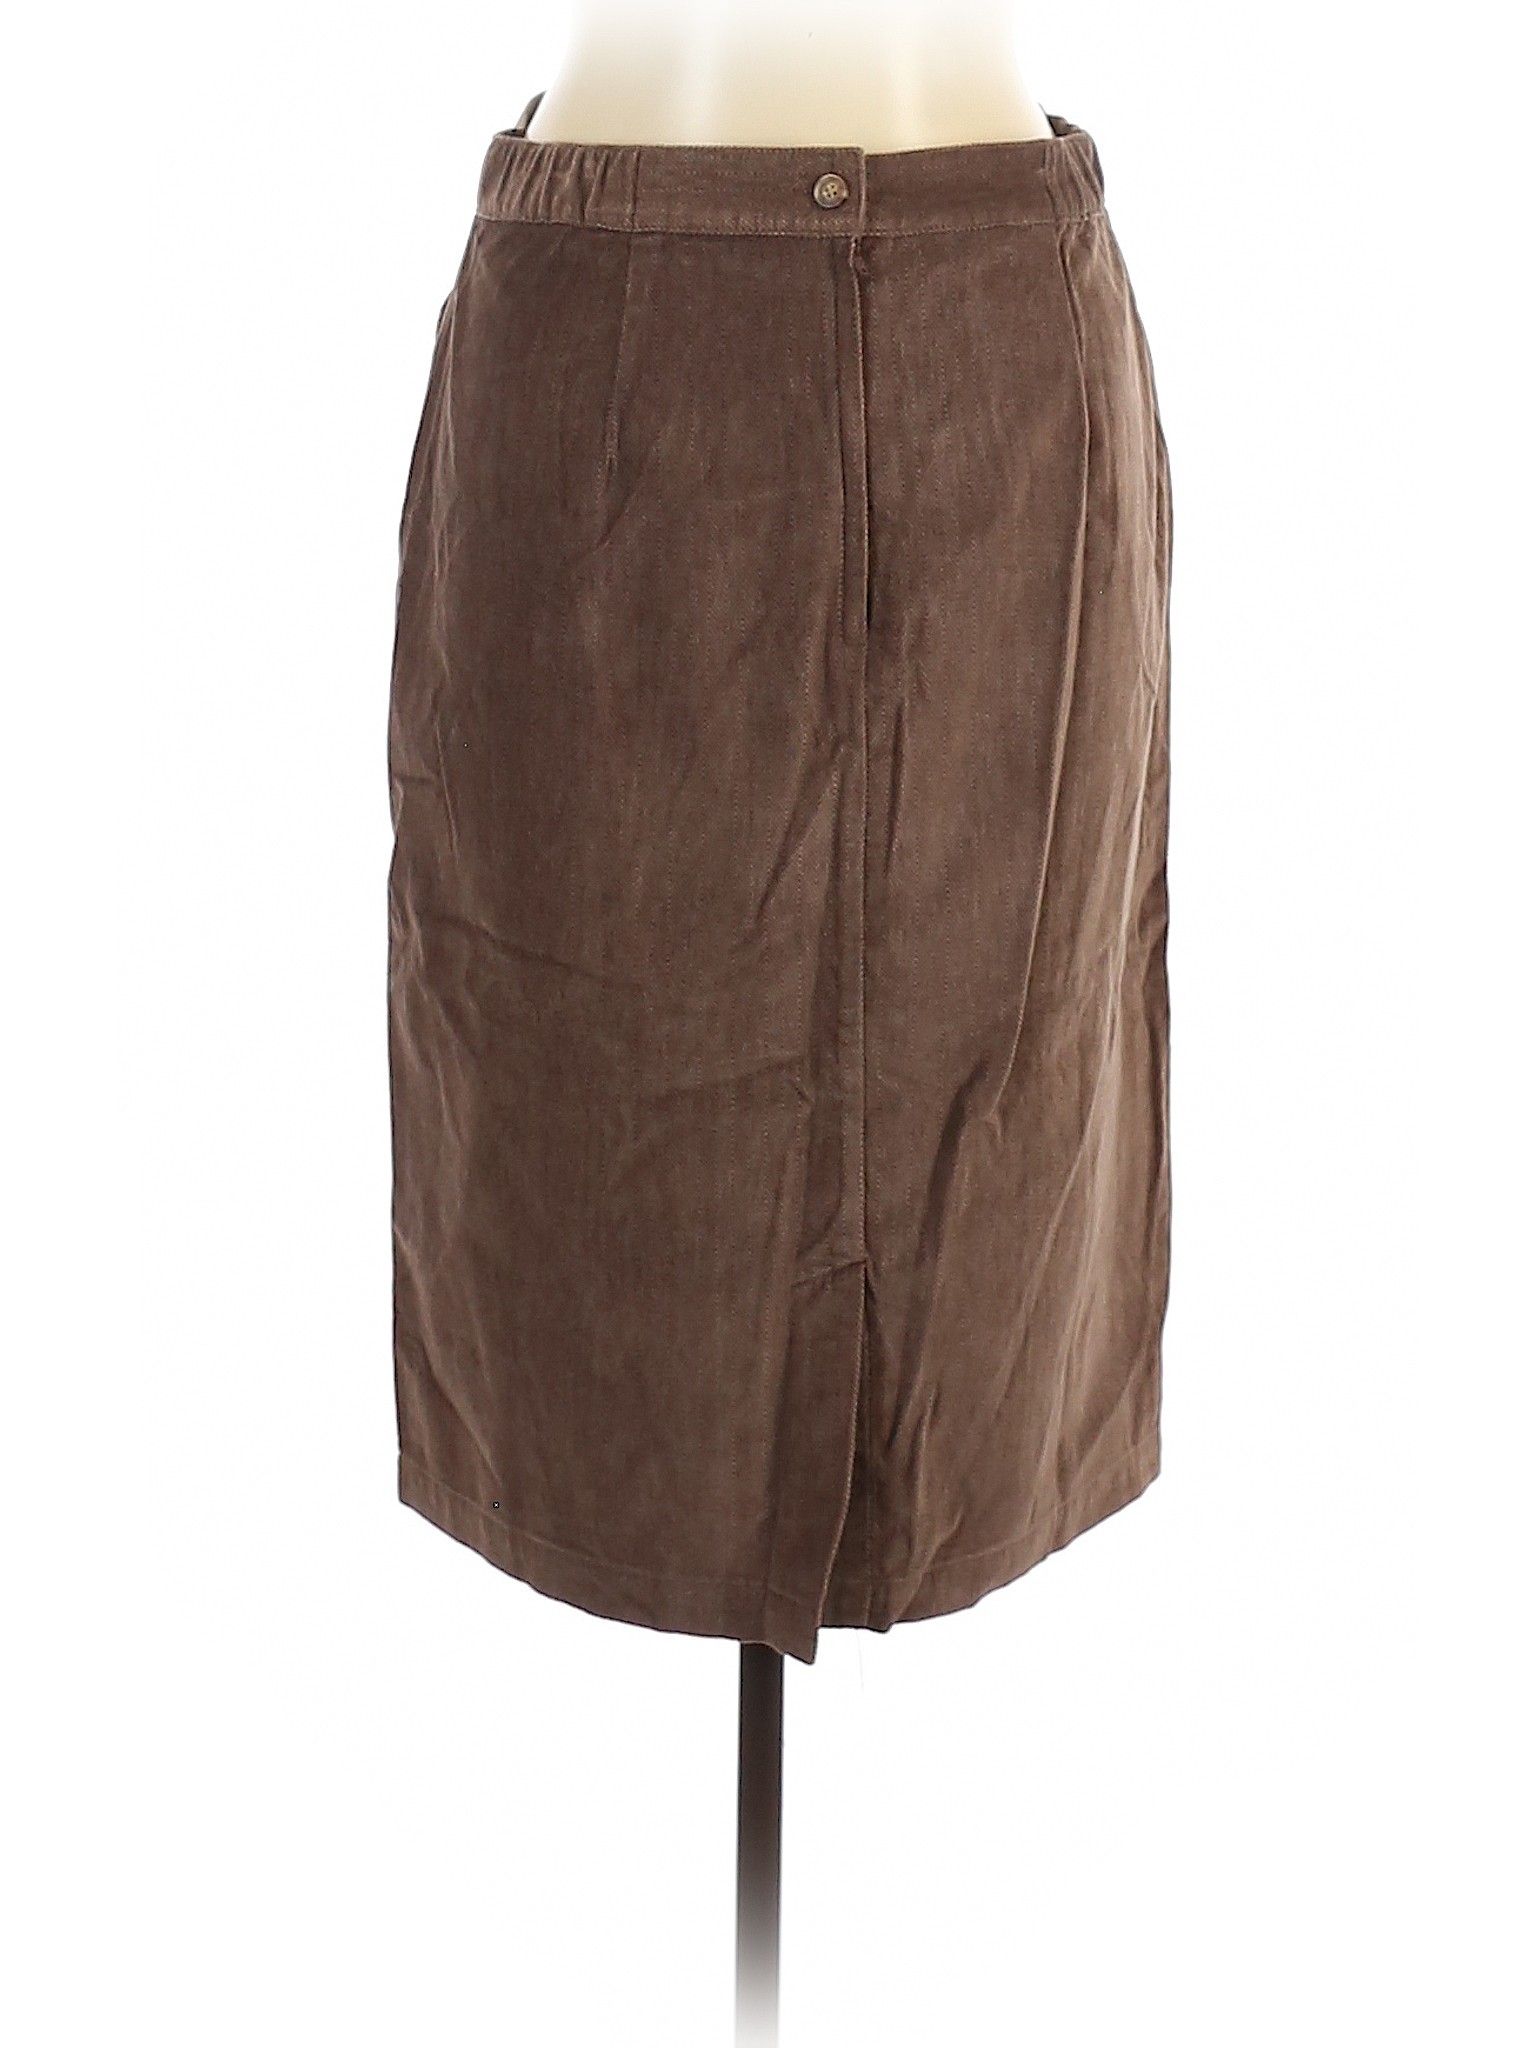 Orvis Women Brown Casual Skirt 10 | eBay